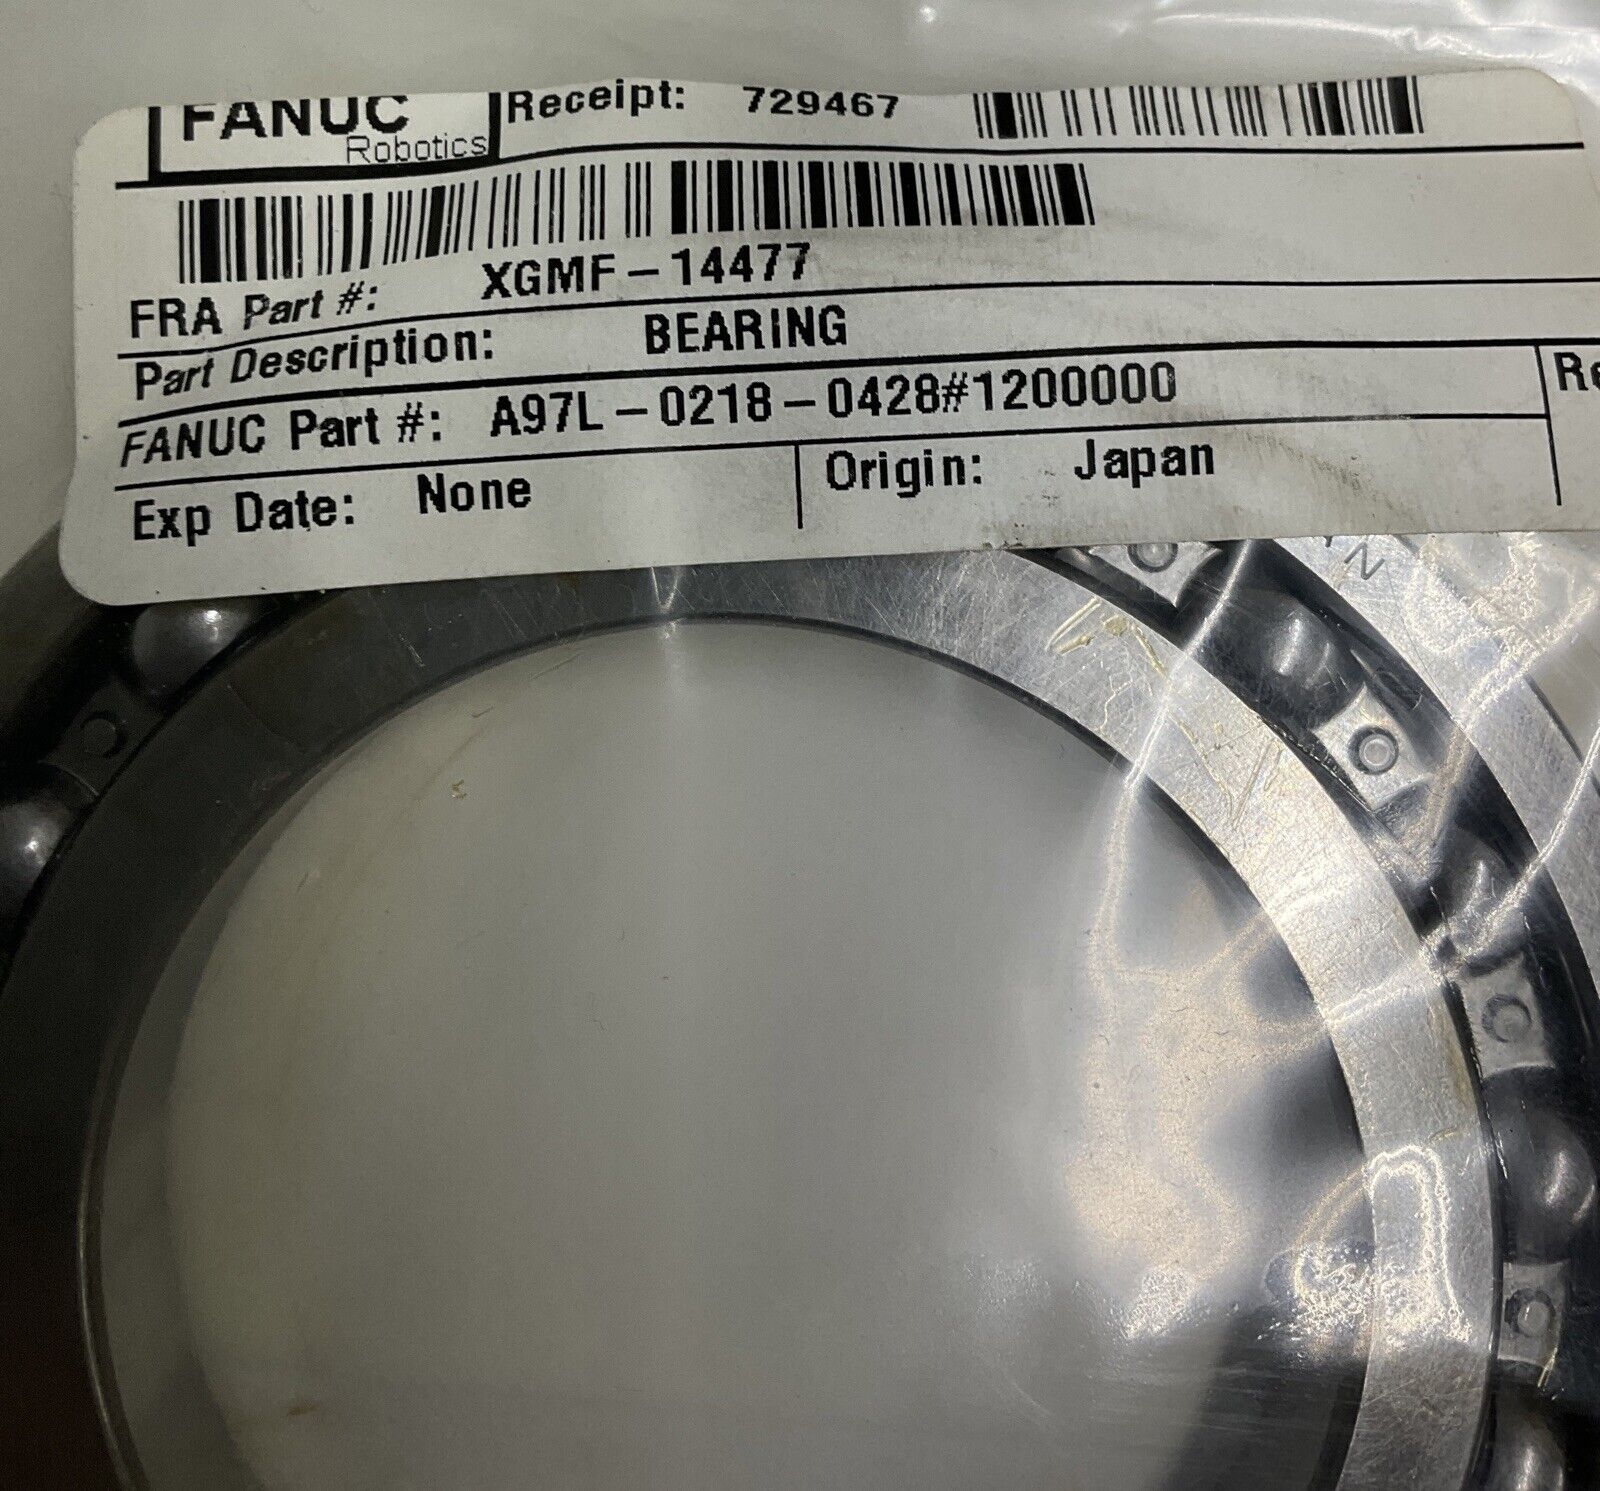 Fanuc A97L-0218-0428 #1200000 Bearing Koyo 16012 (GR165)